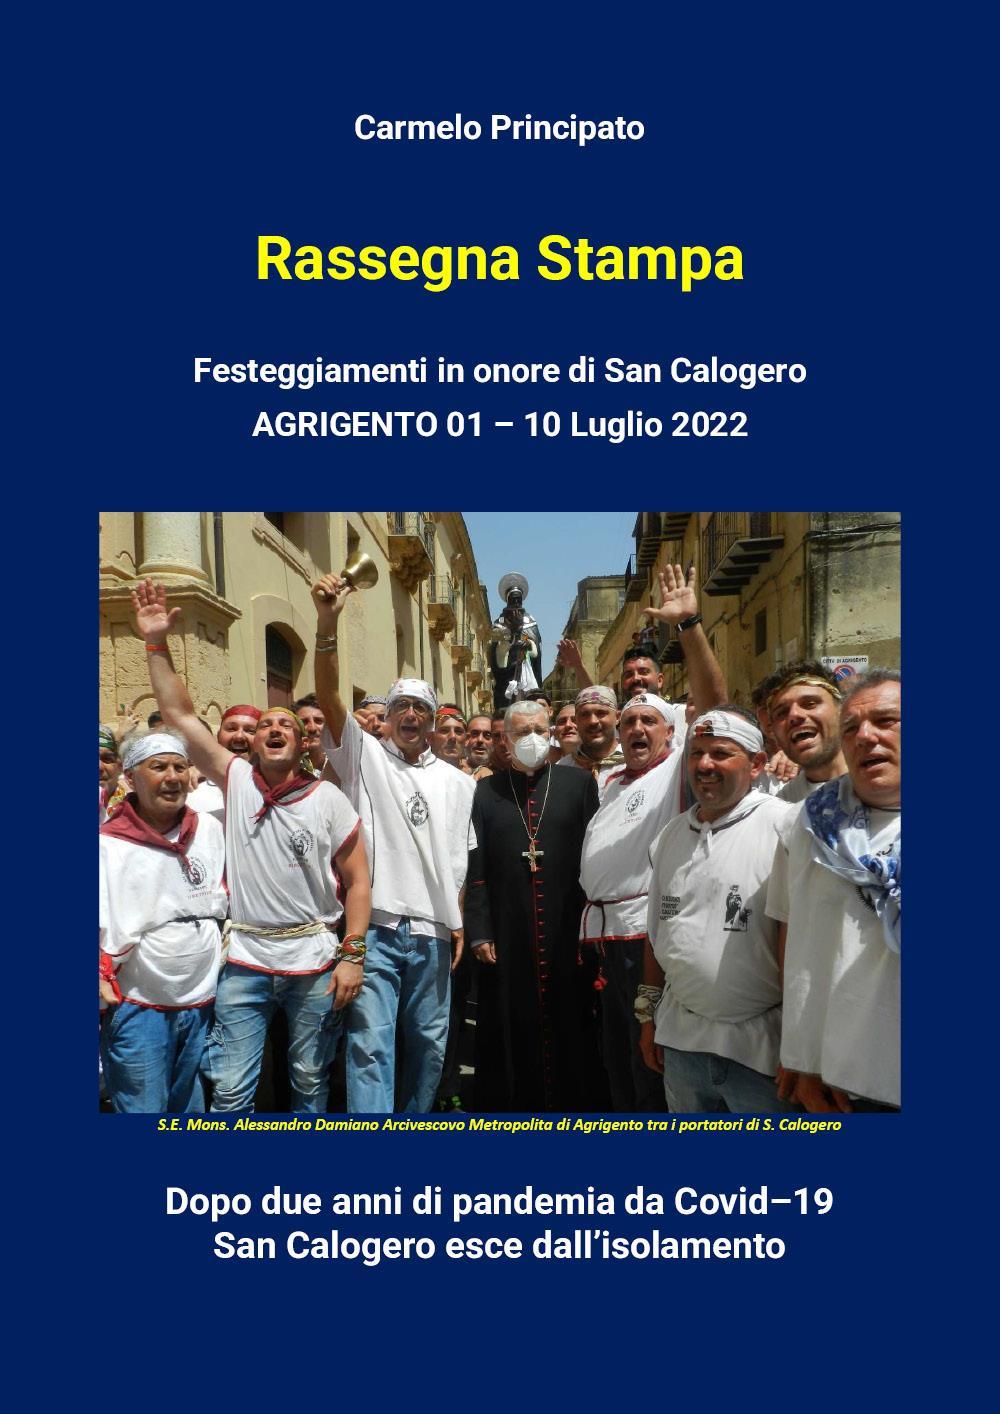 Rassegna Stampa - Festeggiamenti in onore di San Calogero - Agrigento 01-10 Luglio 2022